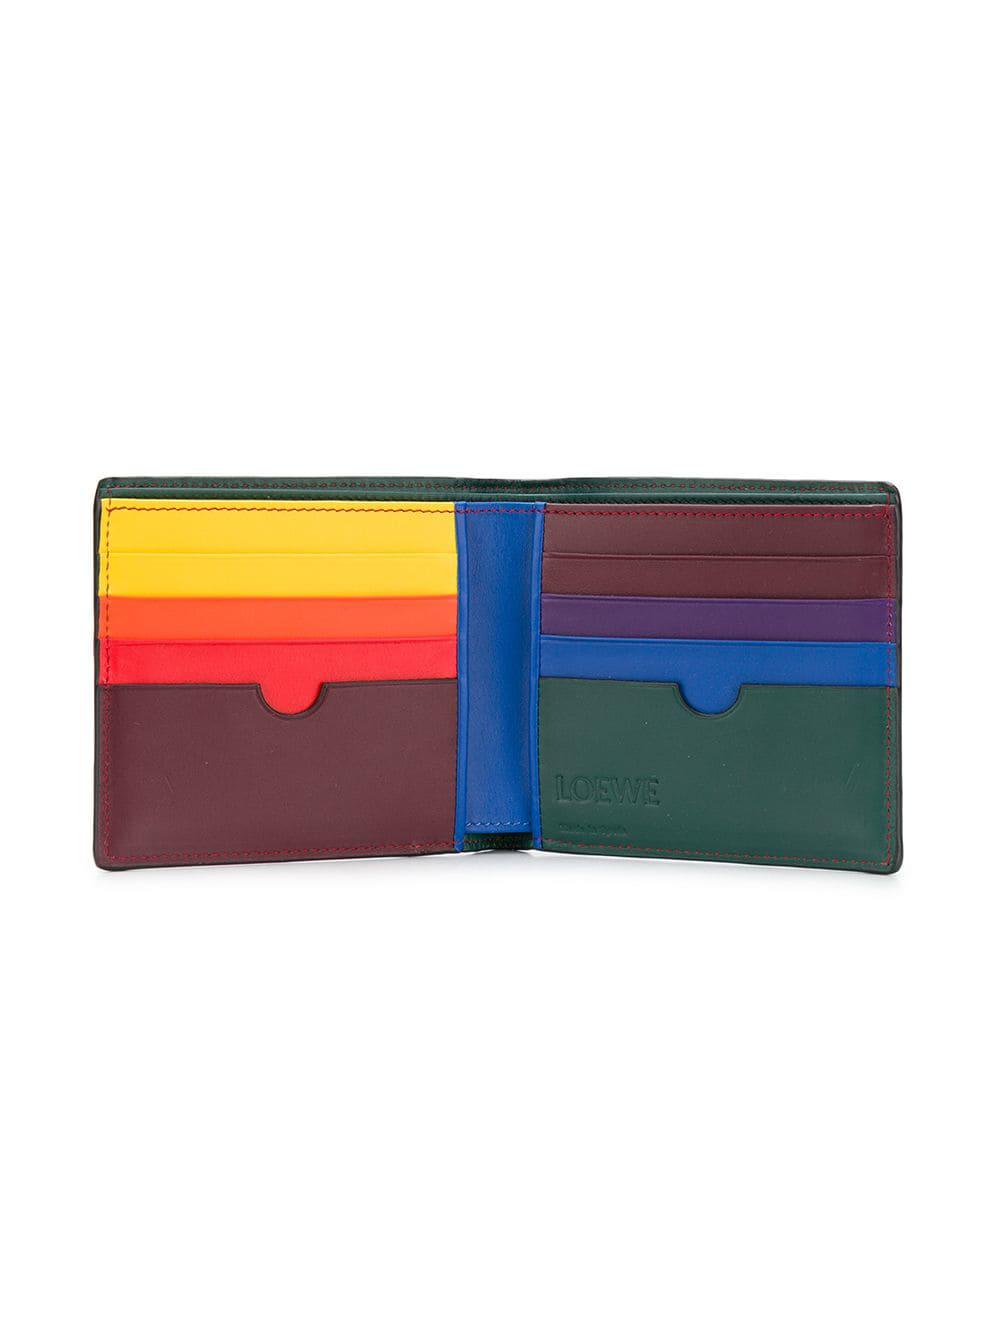 loewe rainbow wallet